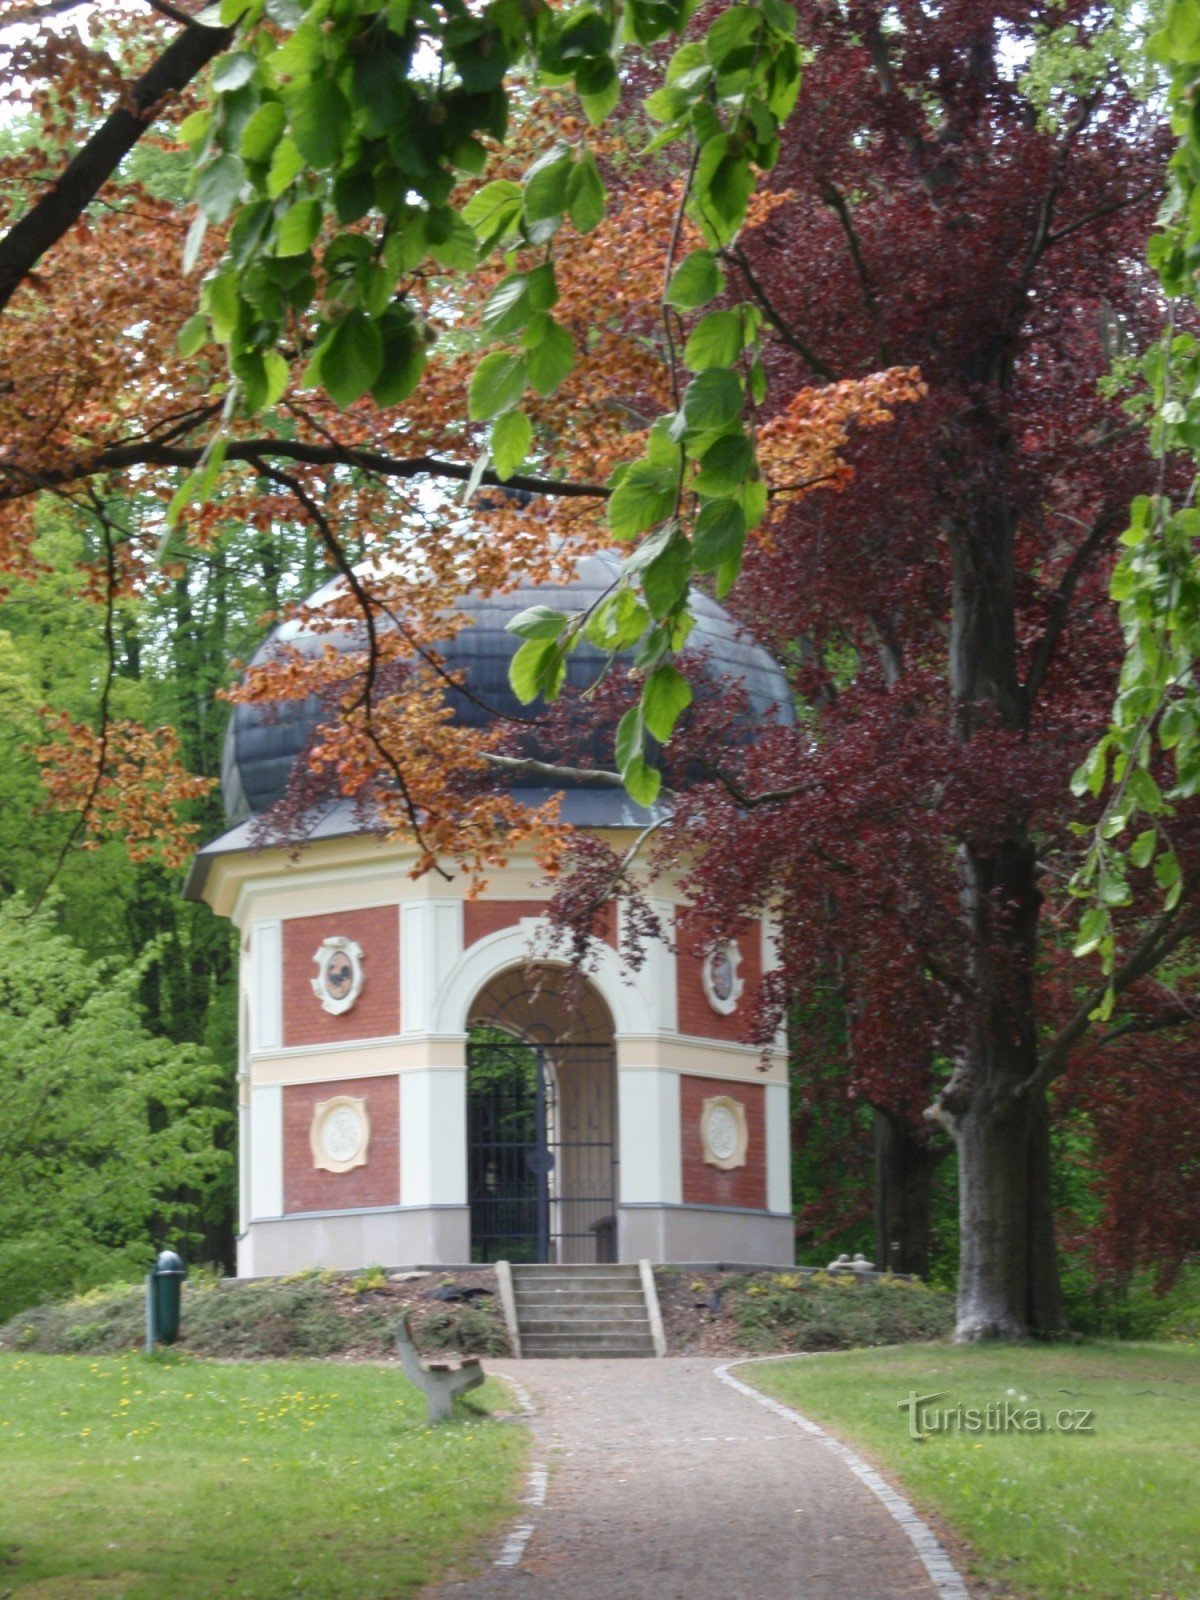 Parcul Javorka din Česká Třebová